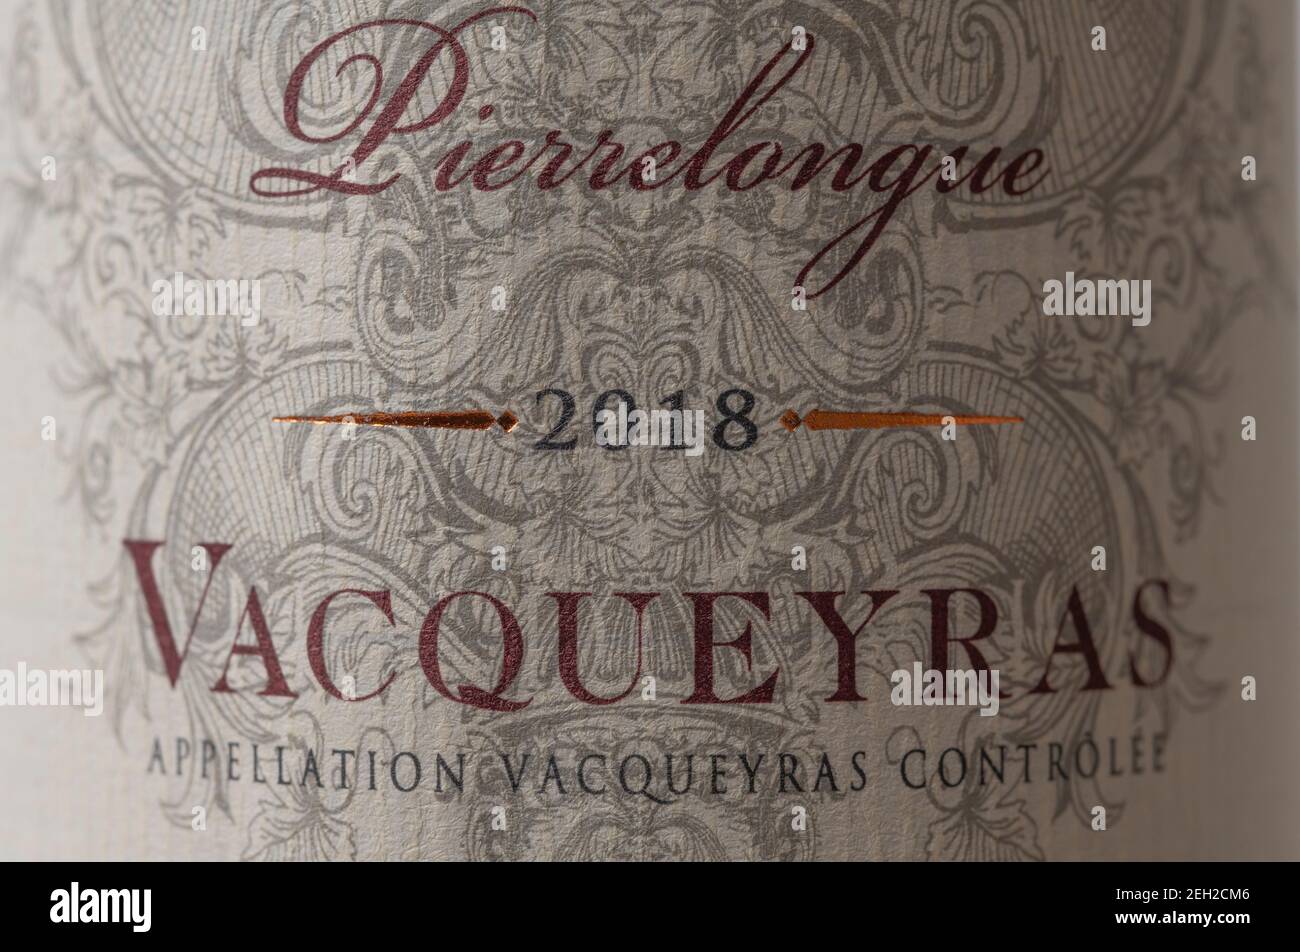 Maison Bouachon Pierrelongue Vacqueyras 2018 French Southern Rhone Valley étiquette de bouteille de vin en gros plan. Banque D'Images